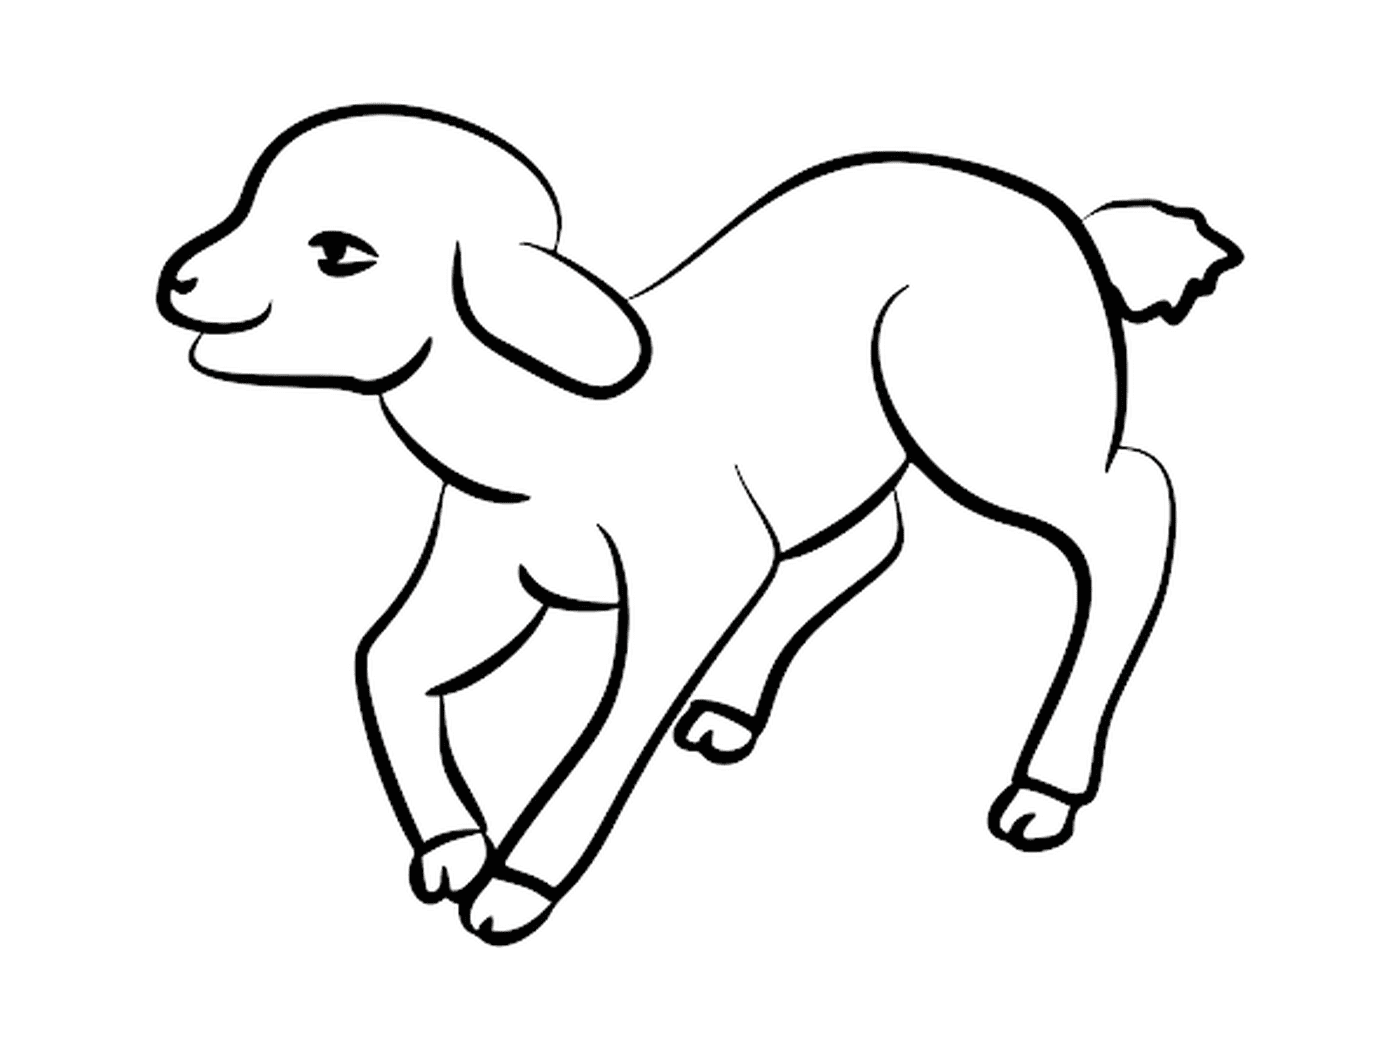  Lamb em pé, ilustração fofa 